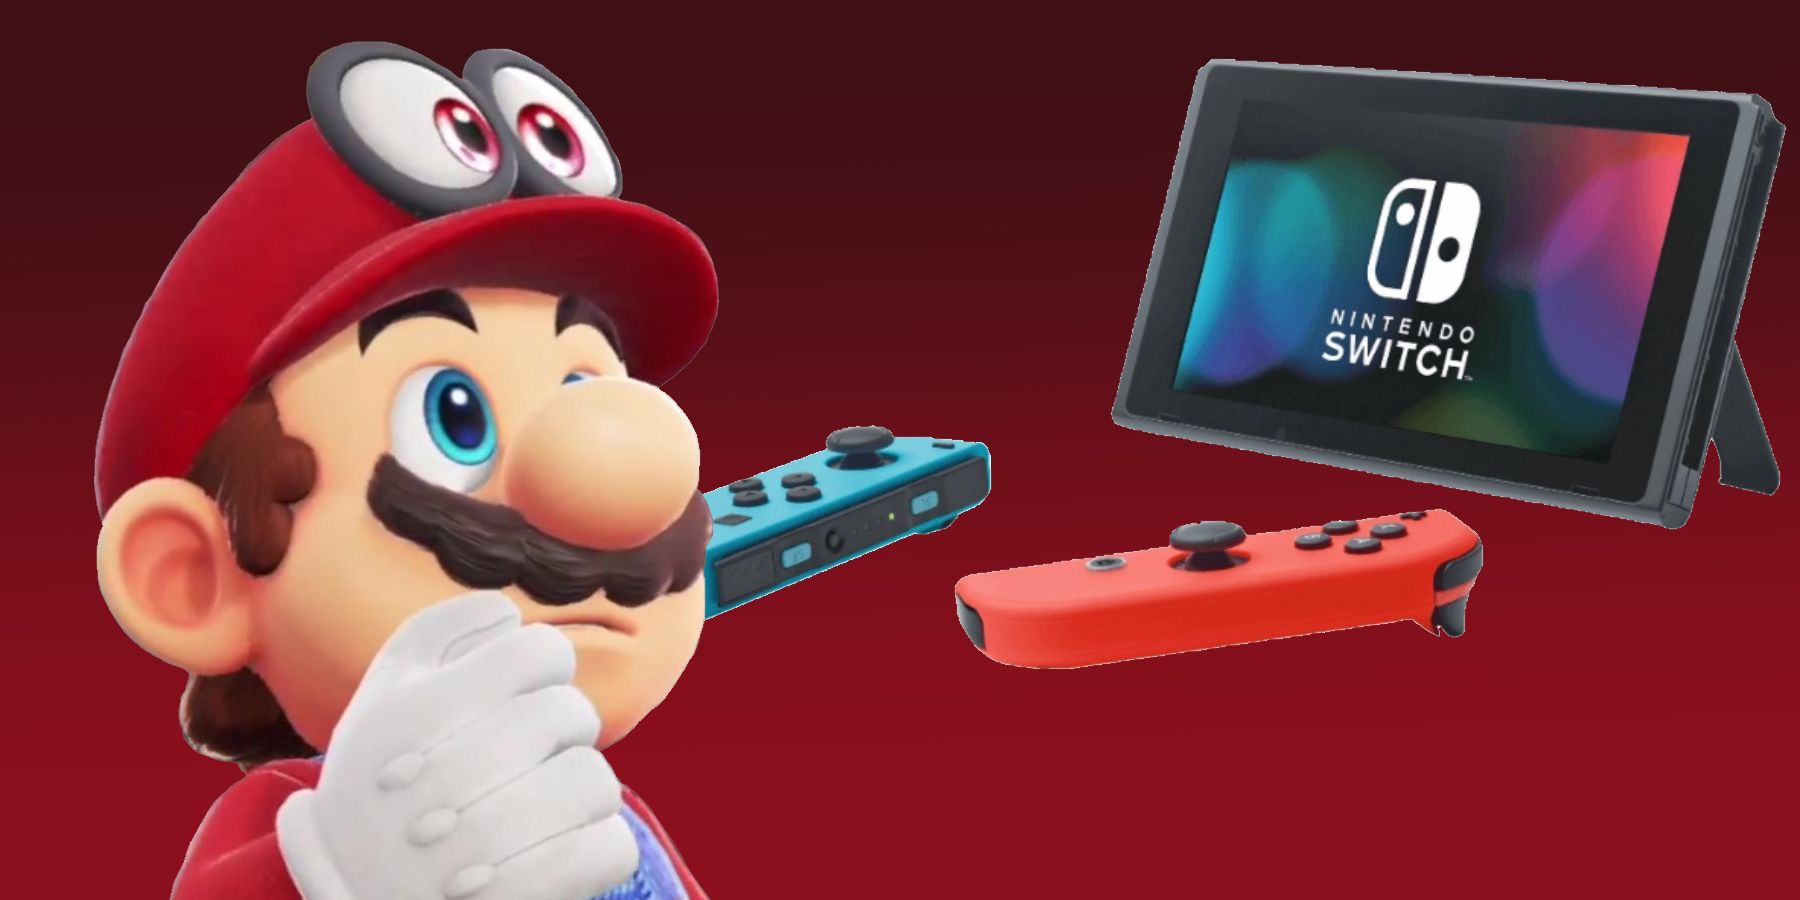 Les fans de Nintendo voudront peut-être retarder l’achat du commutateur OLED